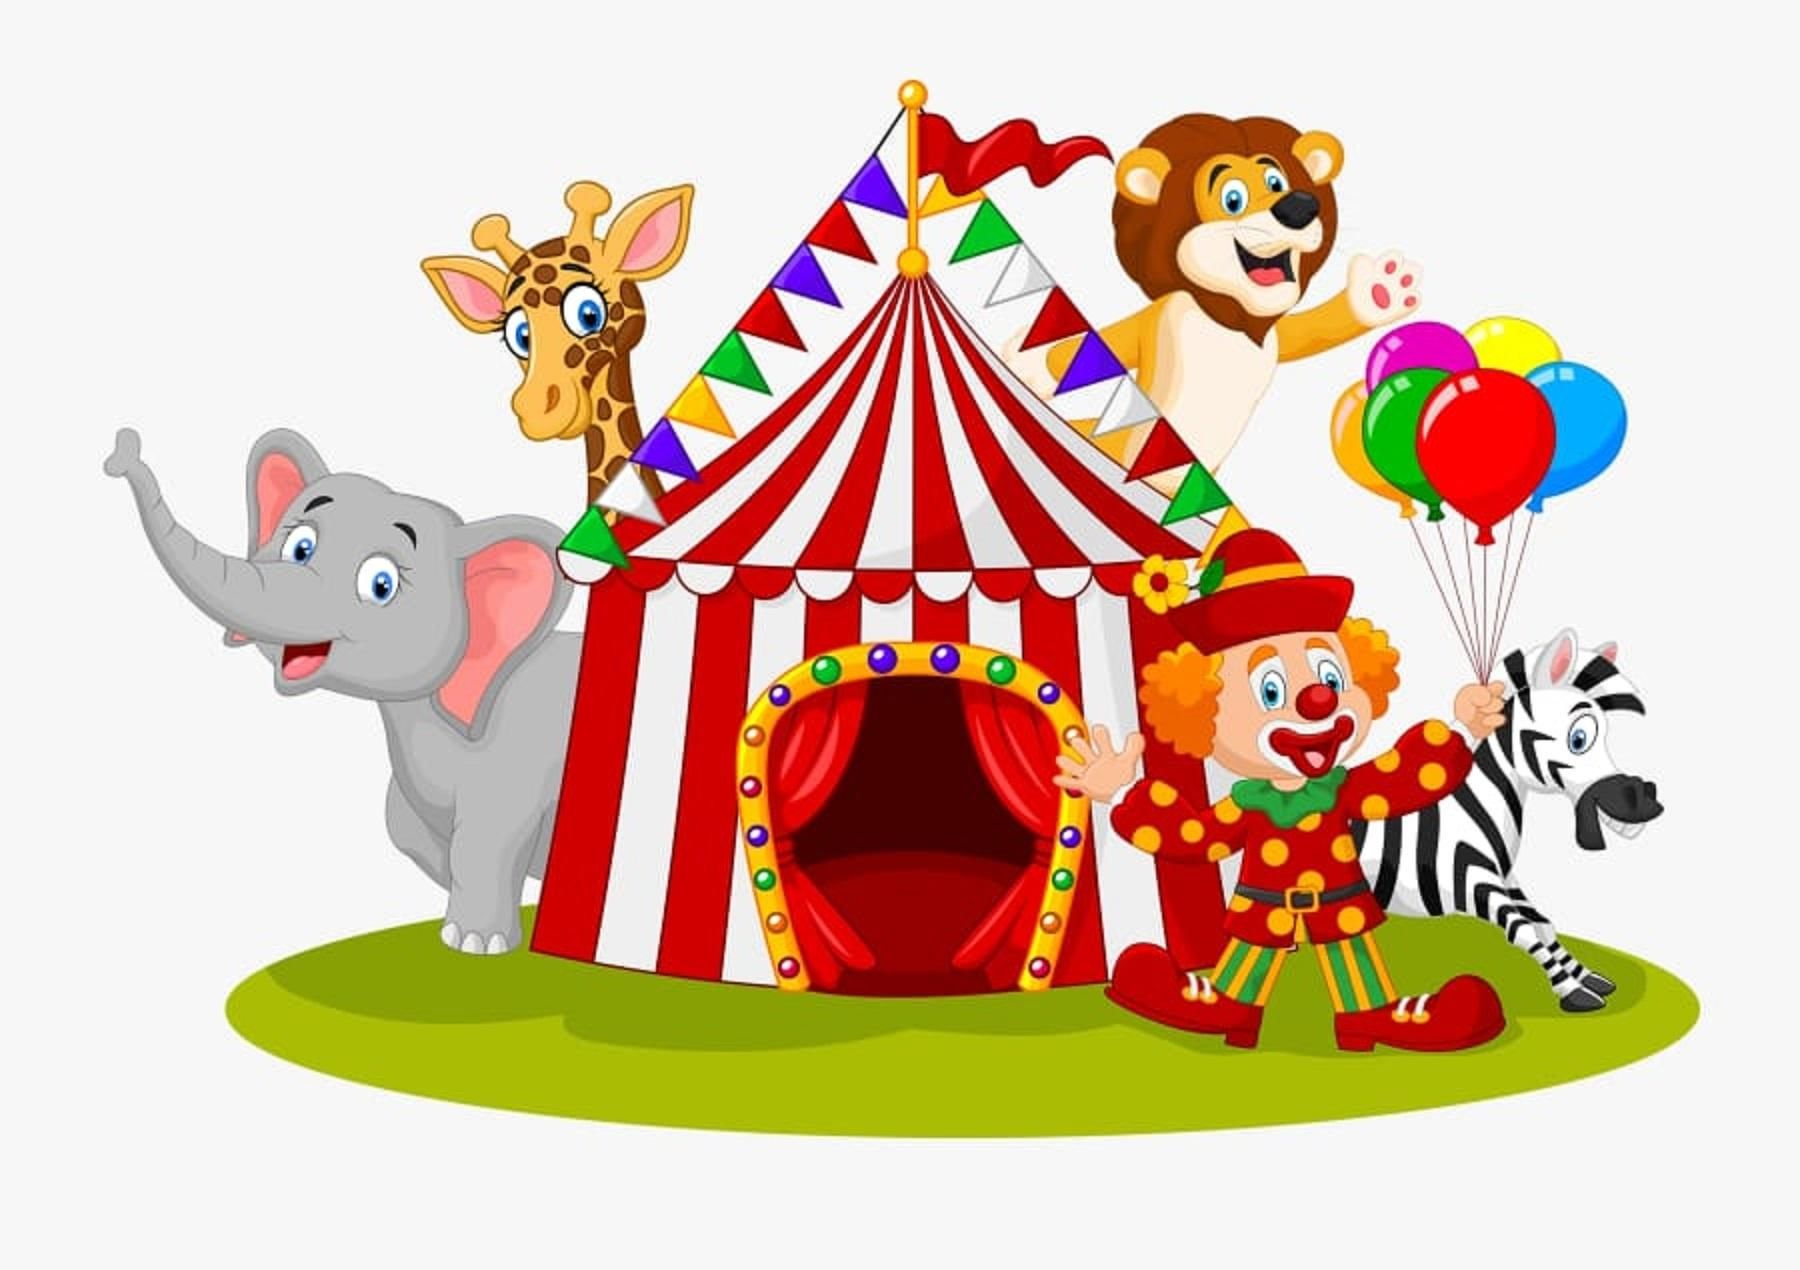 цирк картинки для детей нарисованные